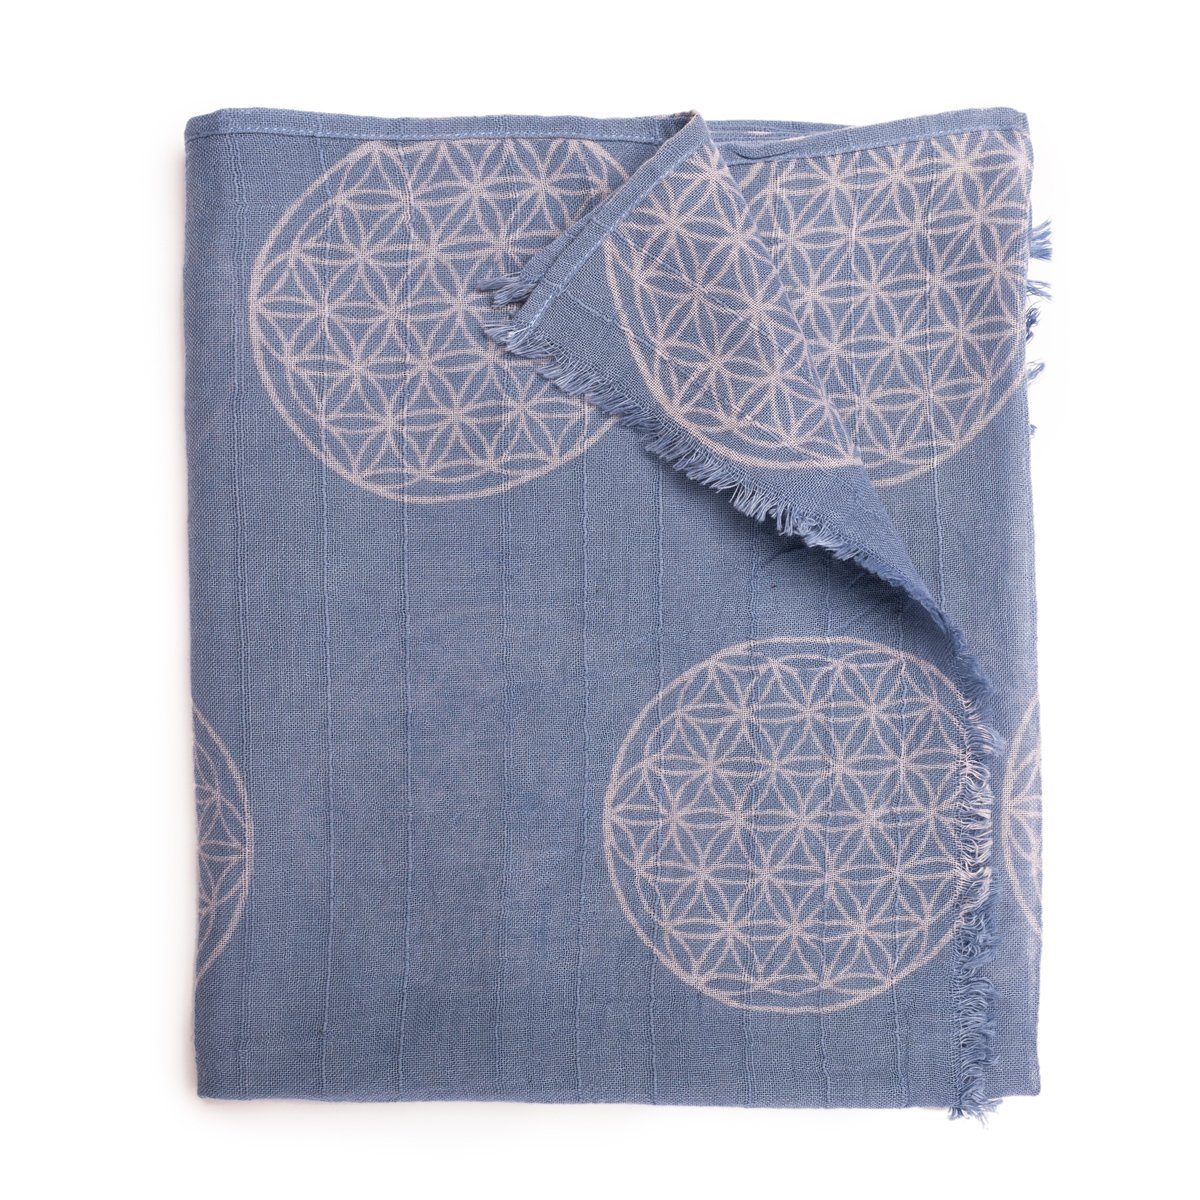 PANASIAM Halstuch elegantes Schaltuch auch als Schultertuch Schal oder Stola tragbar, in schönen farbigen Designs mit kleinen Fransen aus Baumwolle Lebensblume blau